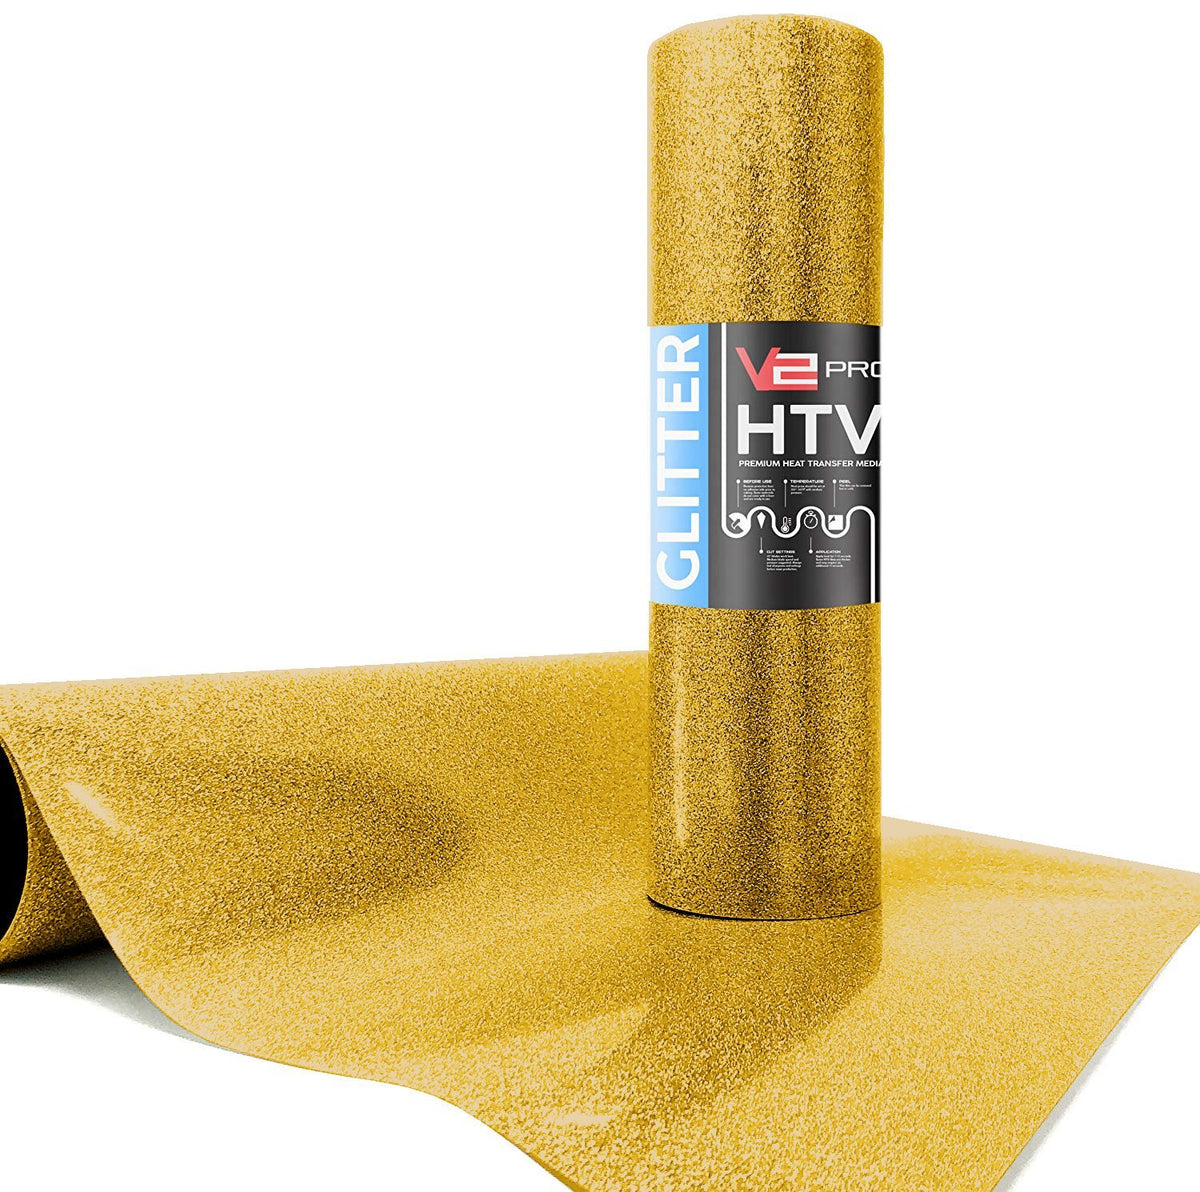 V2 Pro Hyper Gold Glitter Heat Transfer Film, VViViD